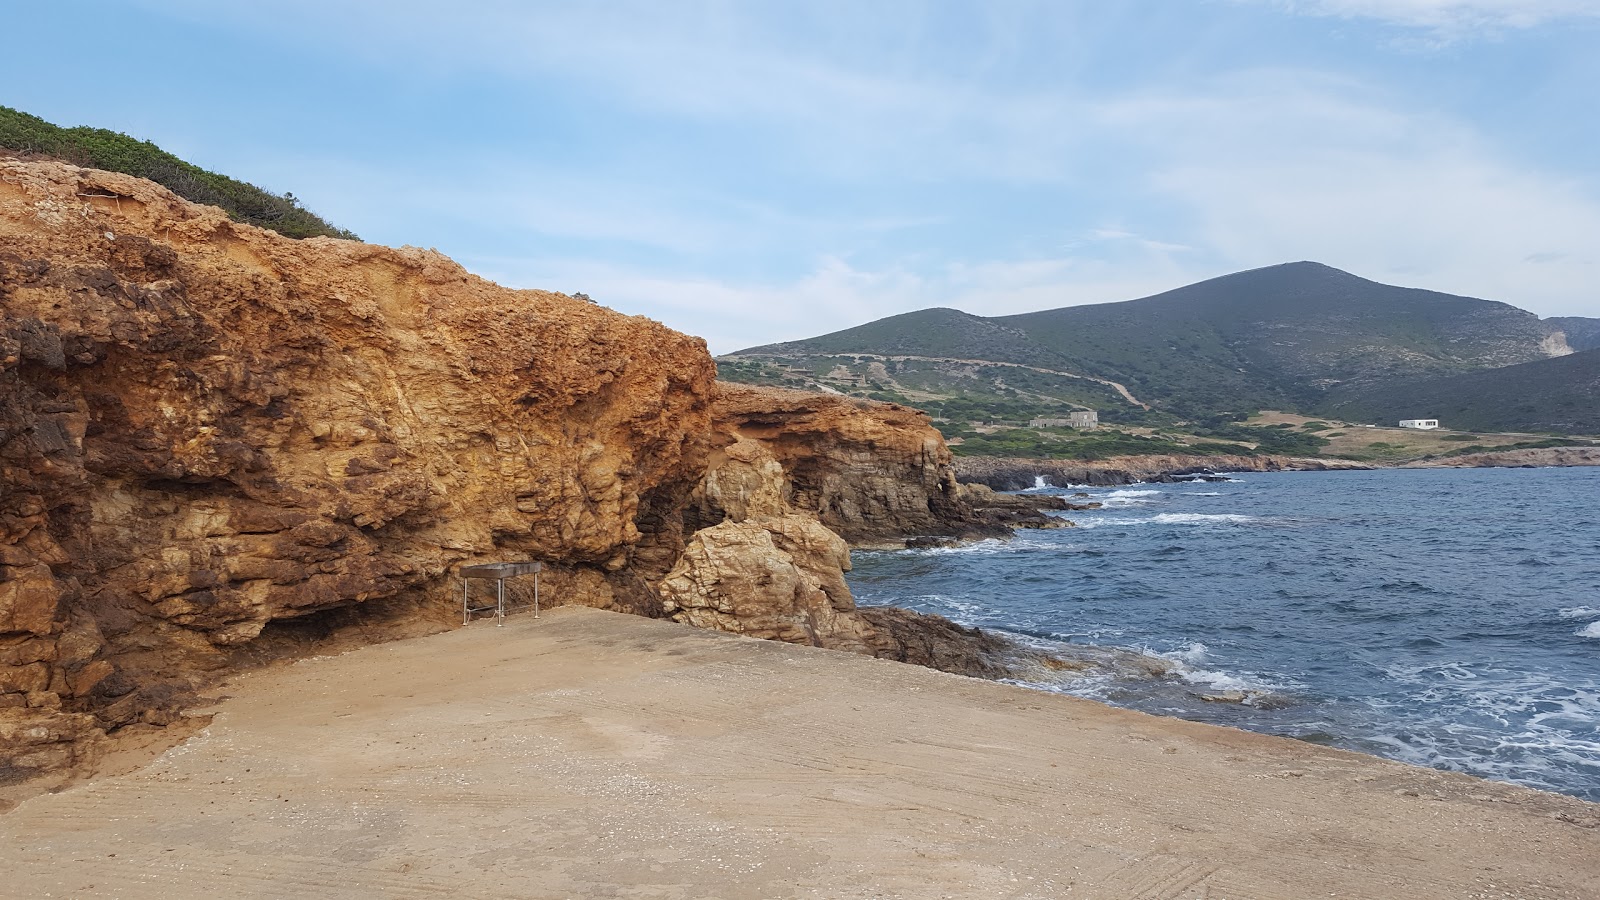 Foto af Agios Georgios beach - populært sted blandt afslapningskendere